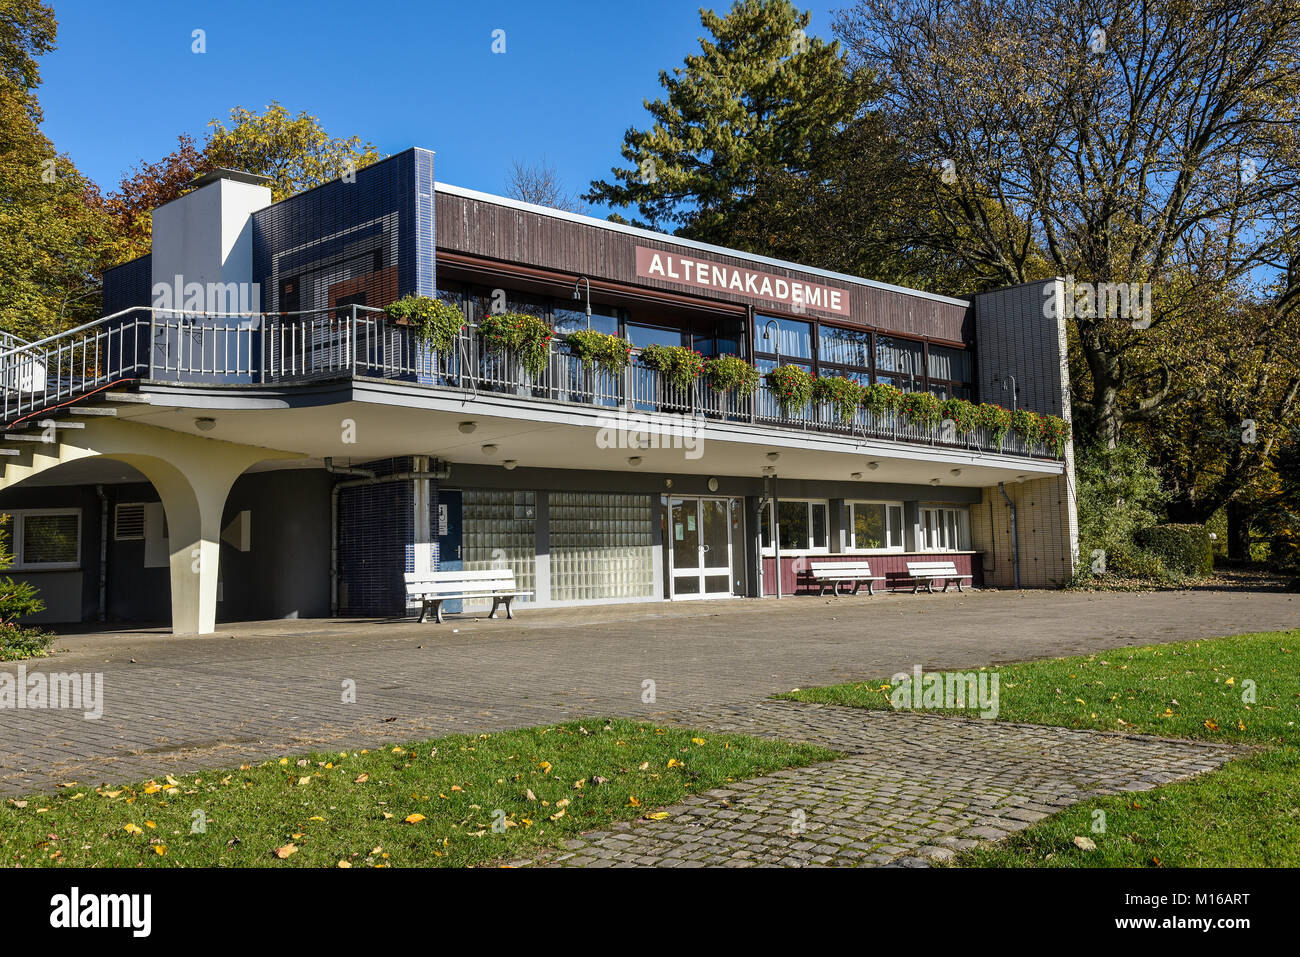 Alten- Akademie, Bildungseinrichtung, Westfalenpark, Stadtpark, Dortmund, Nordrhein-Westfalen, Deutschland Stockfoto